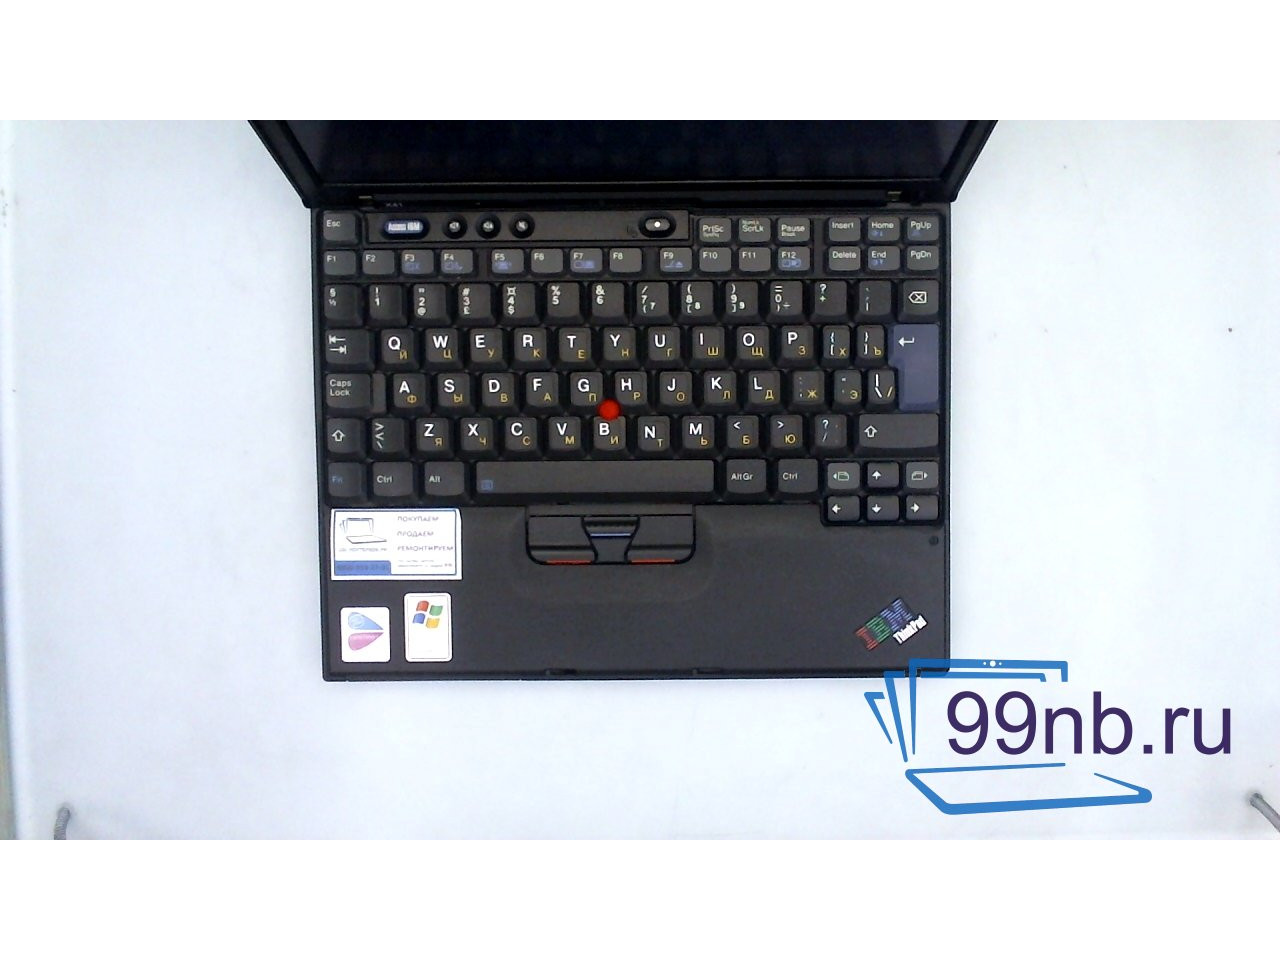 Lenovo Think Pad X41